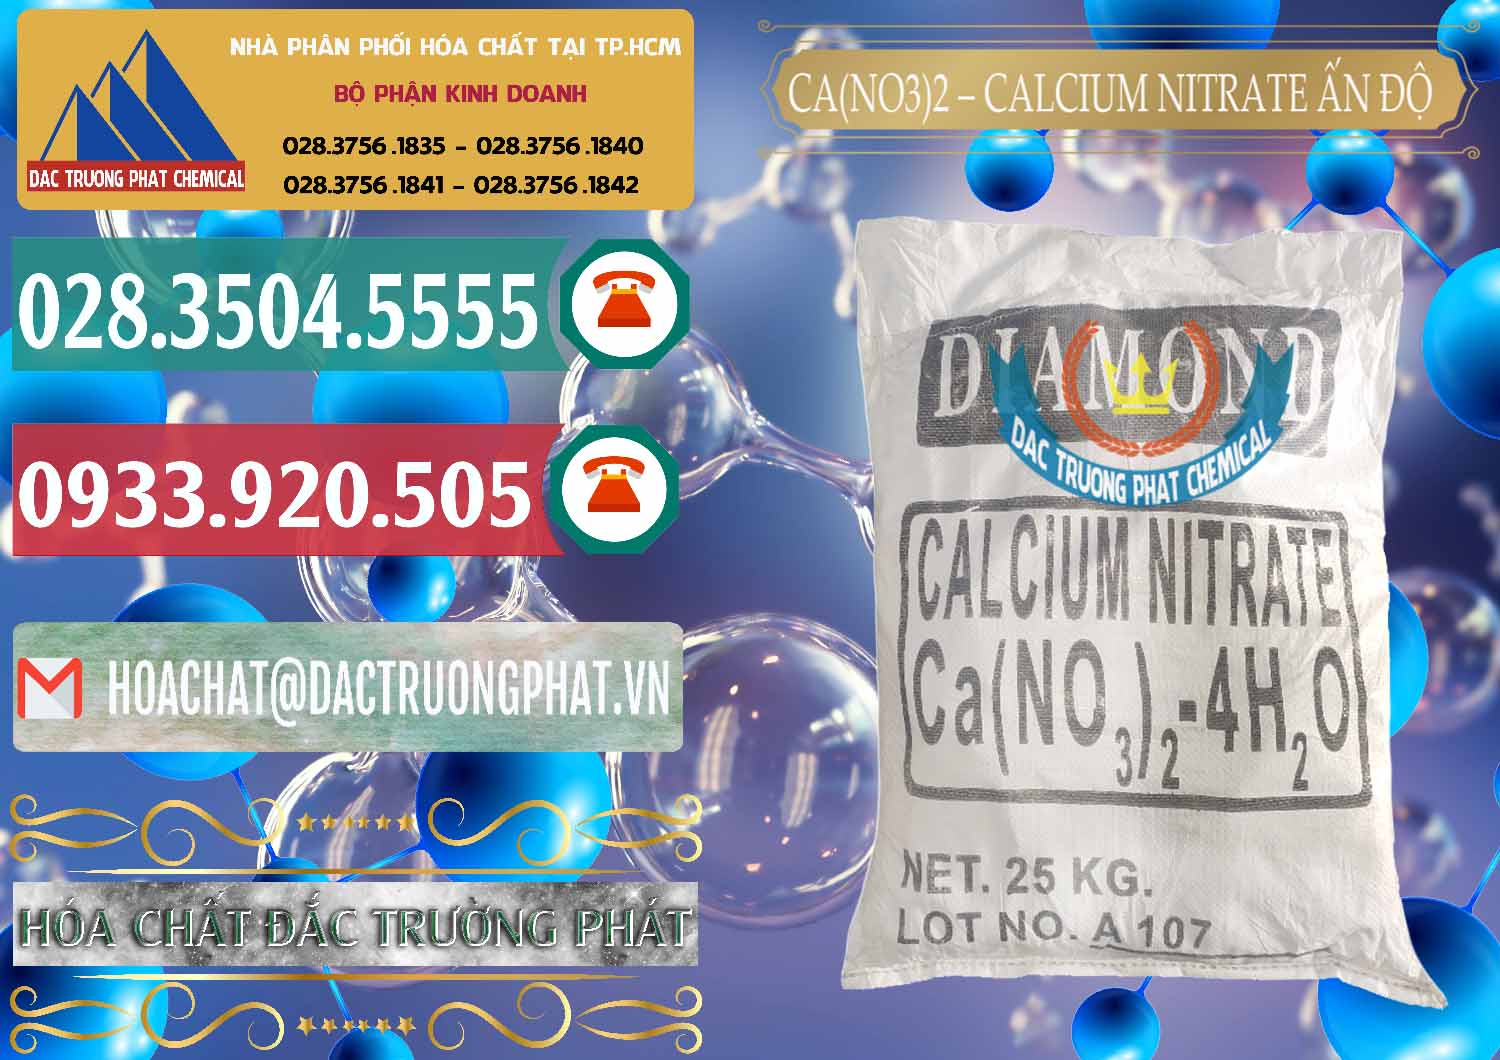 Đơn vị phân phối và bán CA(NO3)2 – Calcium Nitrate Ấn Độ India - 0038 - Cty phân phối và bán hóa chất tại TP.HCM - muabanhoachat.vn